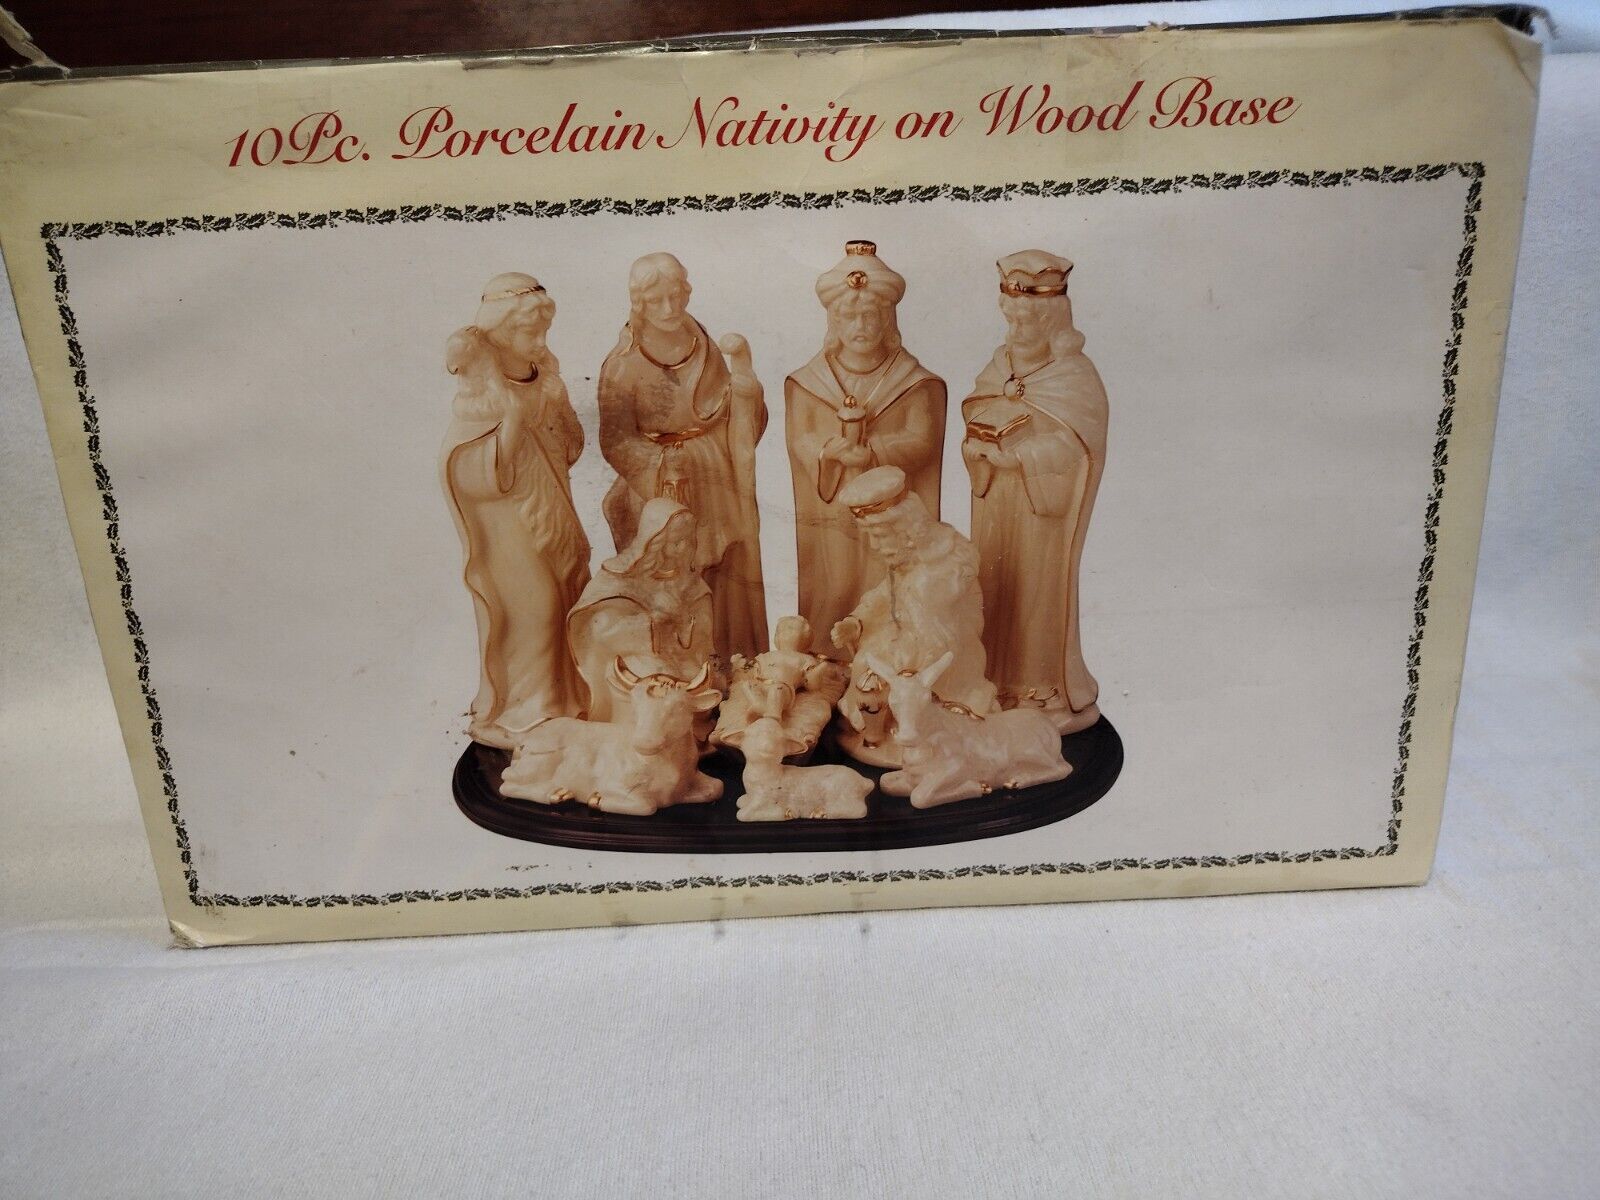 10 pc. Porcelain nativity set